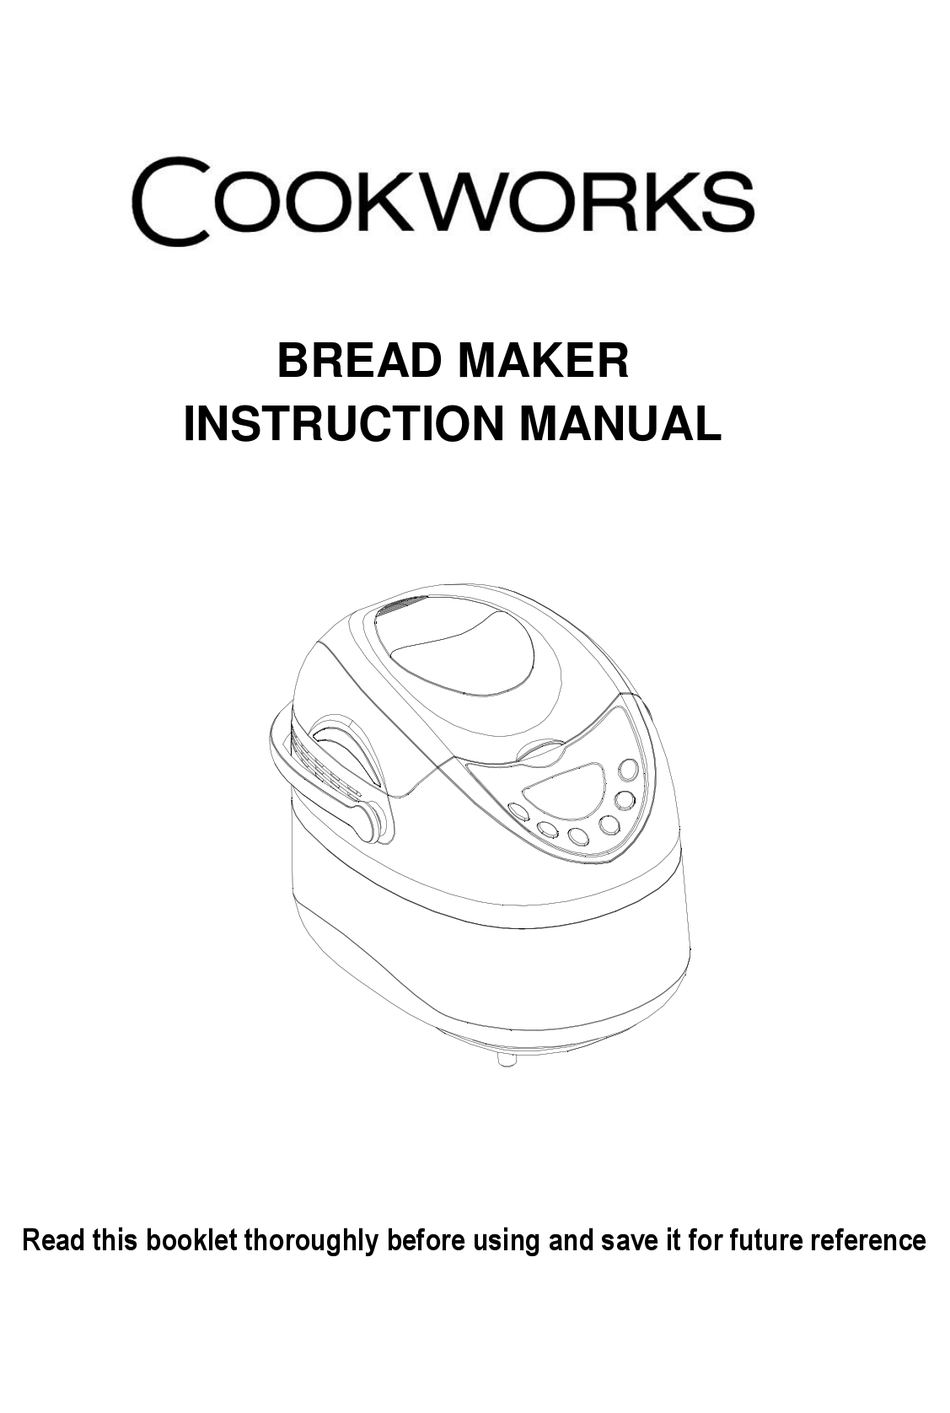 COOKWORKS XBM1128 INSTRUCTION MANUAL Pdf Download | ManualsLib